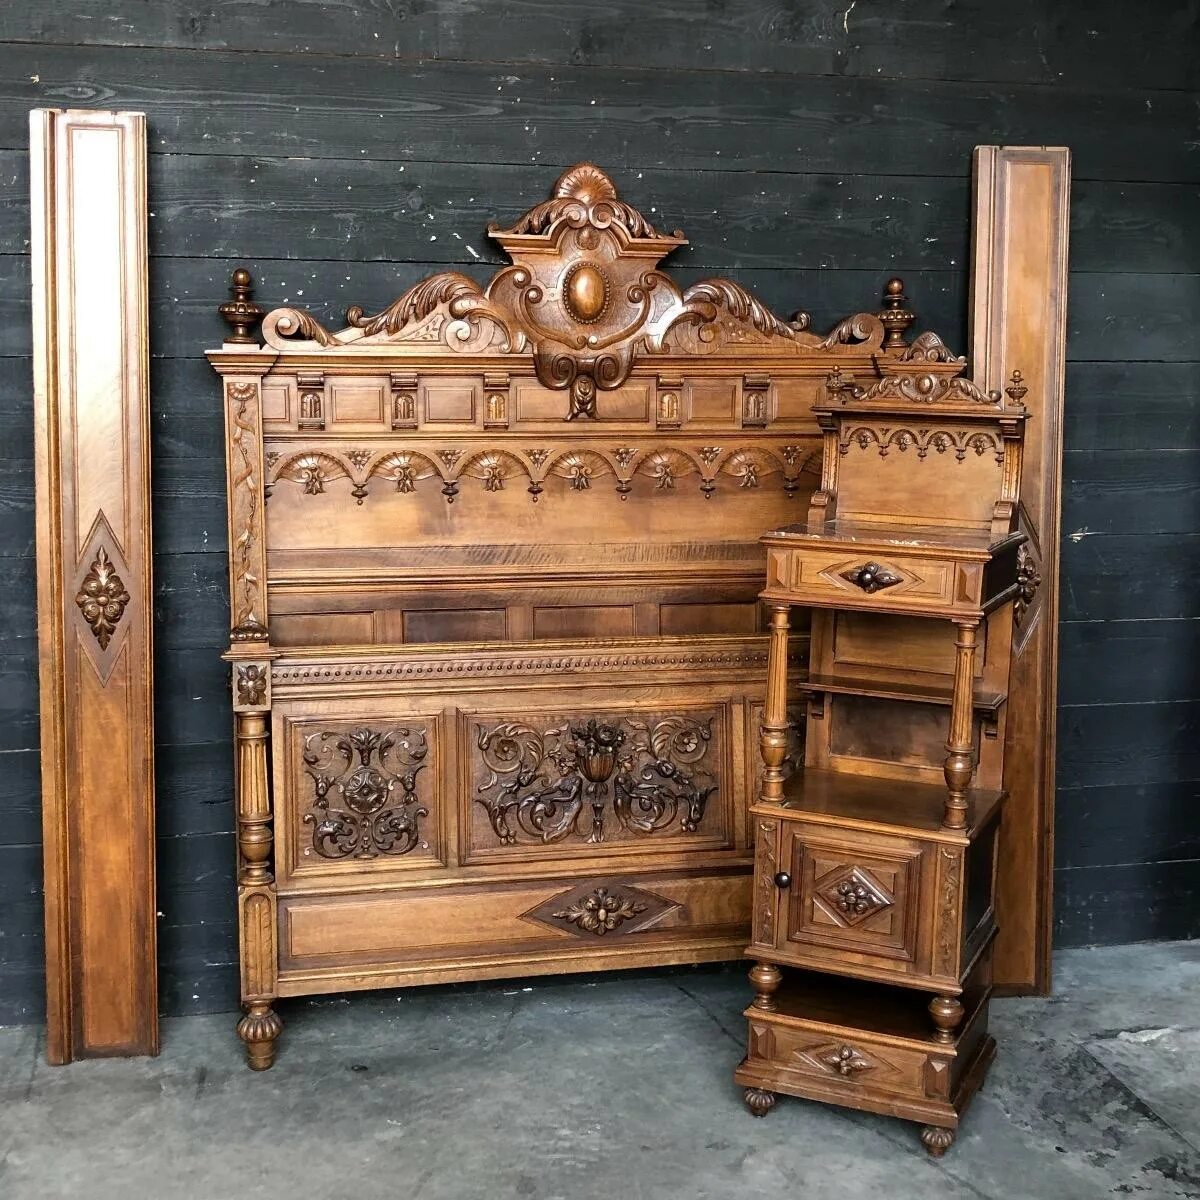 Куплю старые кровати. Кровать Ренессанс Ренессанс. Антикварная кровать испанский Ренессанс. Кровать эпохи Ренессанса. Мебель эпохи Ренессанса кровать.